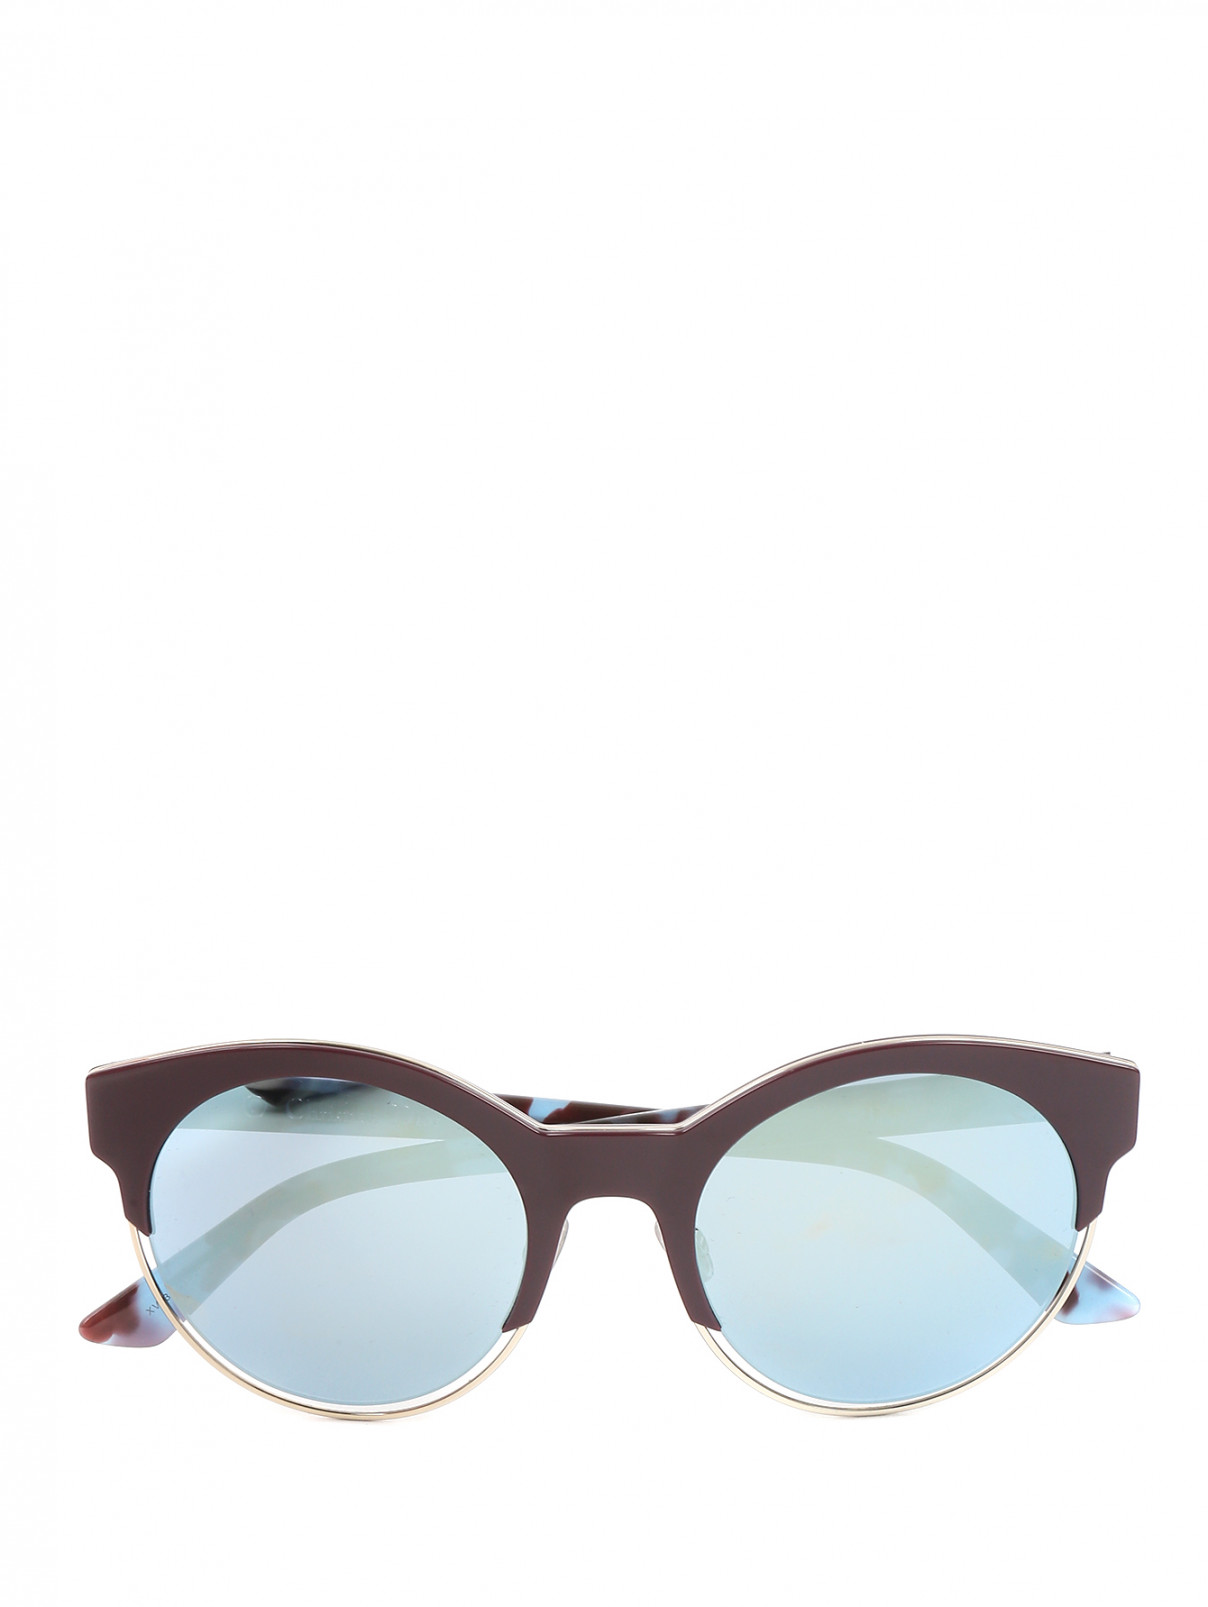 Солнцезащитные очки в оправе из пластика и металла Christian Dior  –  Общий вид  – Цвет:  Красный